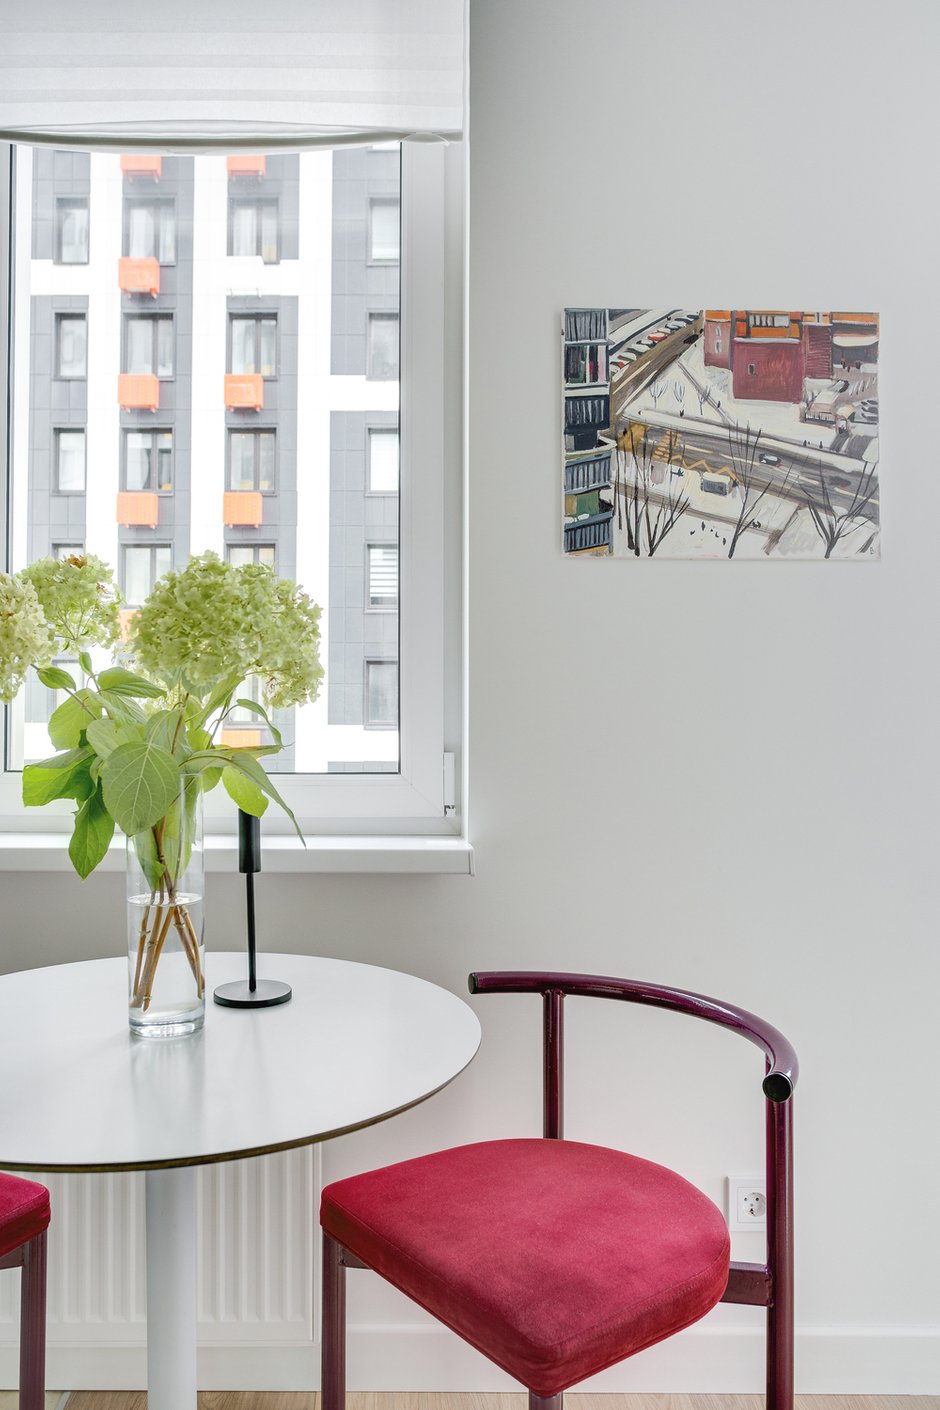 Искусство оживляет интерьер и добавляет характер.  Картины на обеденном столе и в спальне — работы Марии Суворовой, серия «Московские дворы».